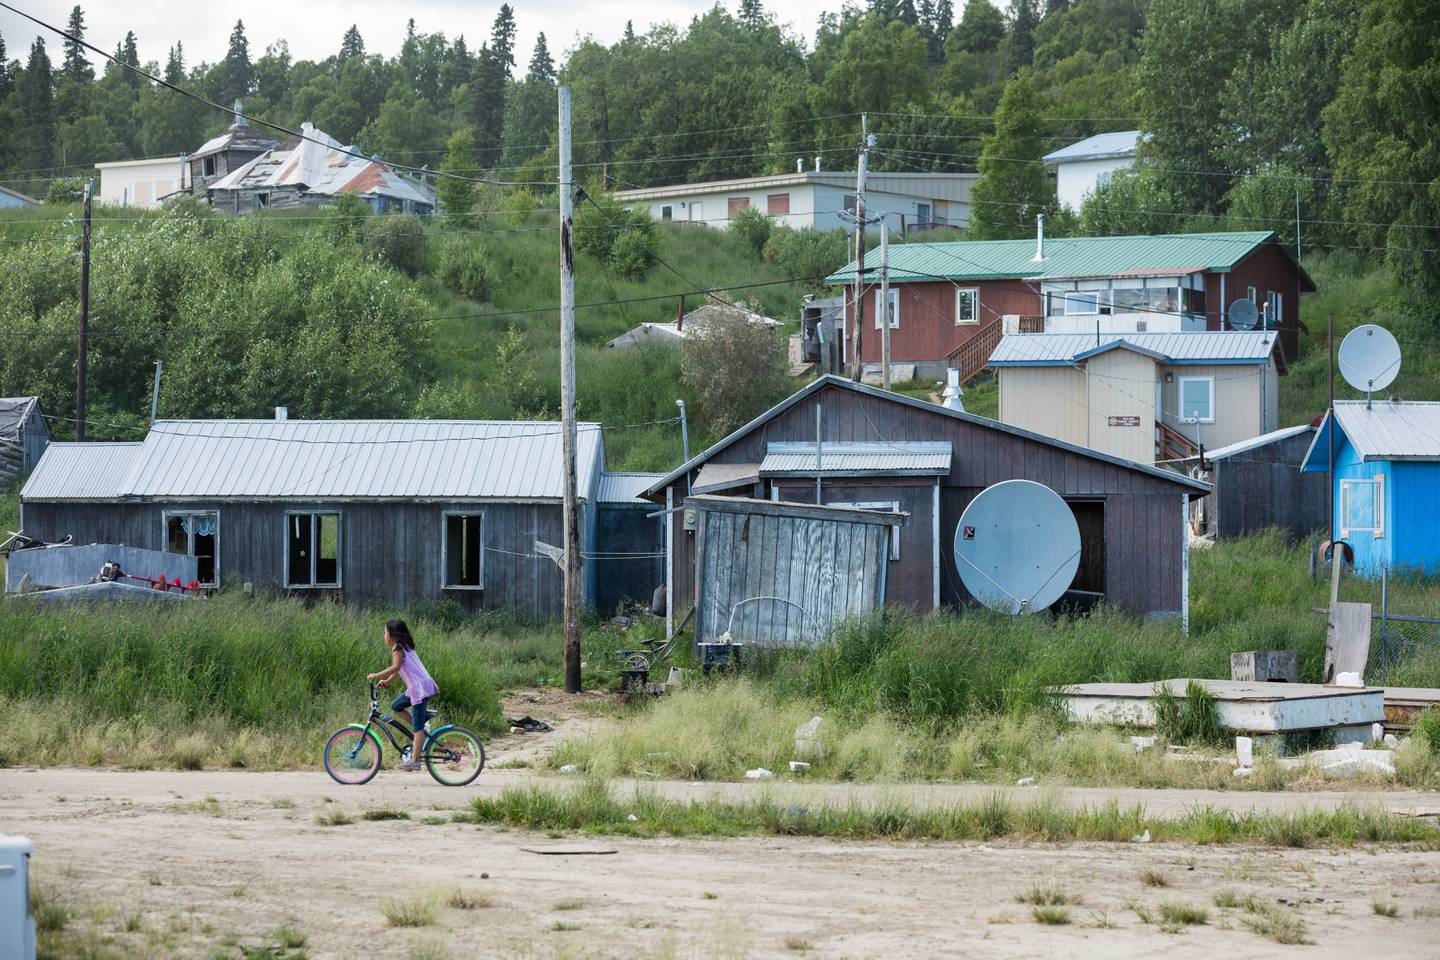 Russian Mission, Summer, Syra Kozevnikoff, rural Alaska